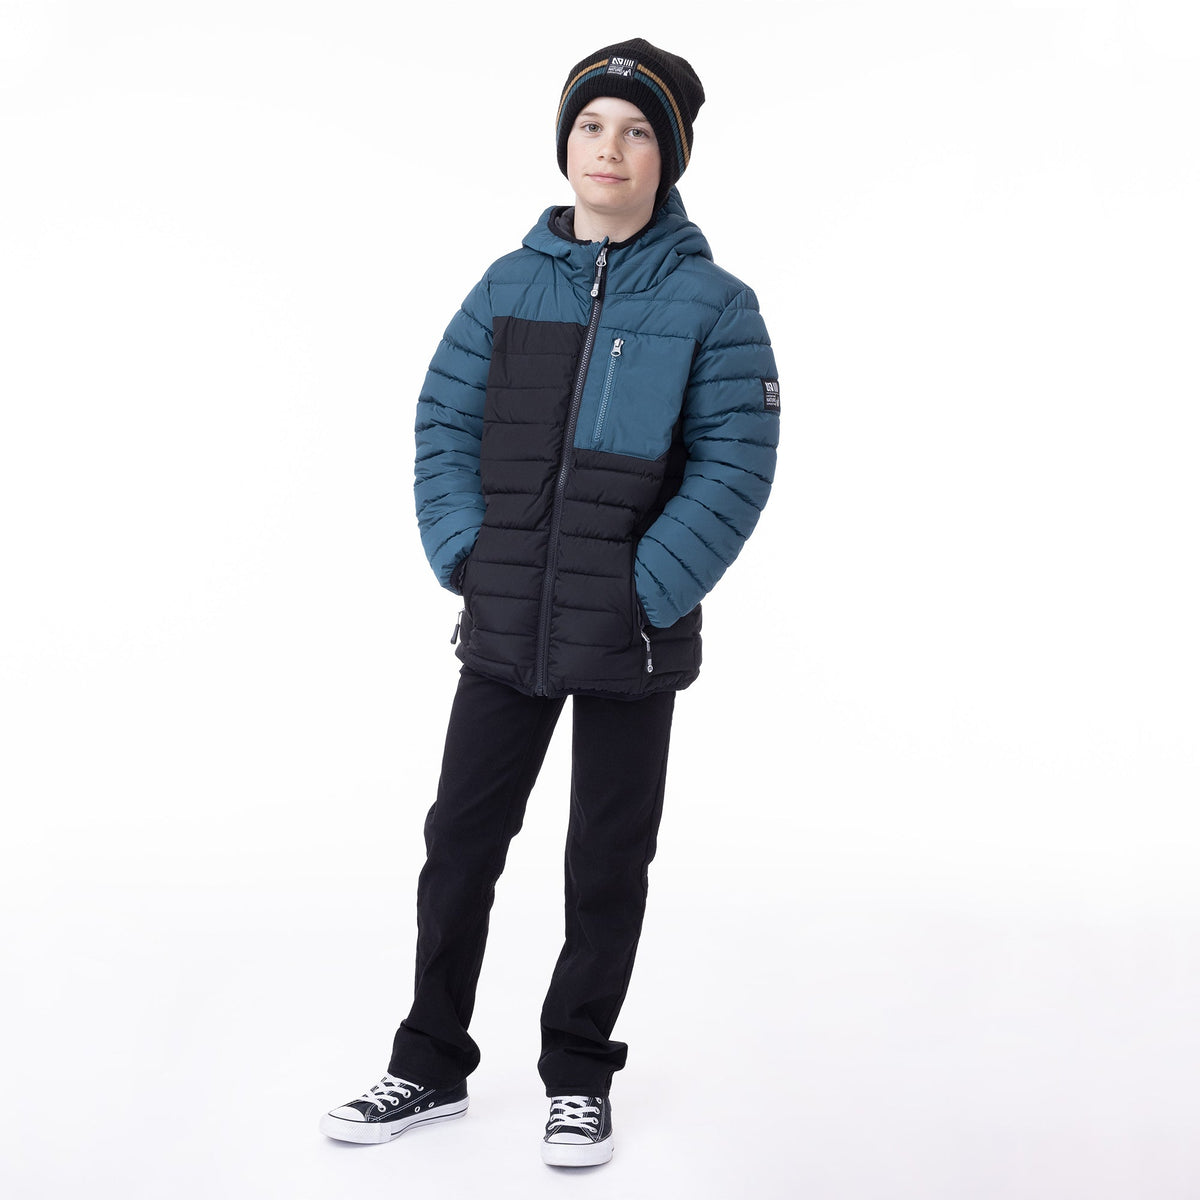 Tuque en tricot pour enfant garçon par Nanö | F23TU1251 Noir | Boutique Flos, vêtements mode pour bébés et enfants